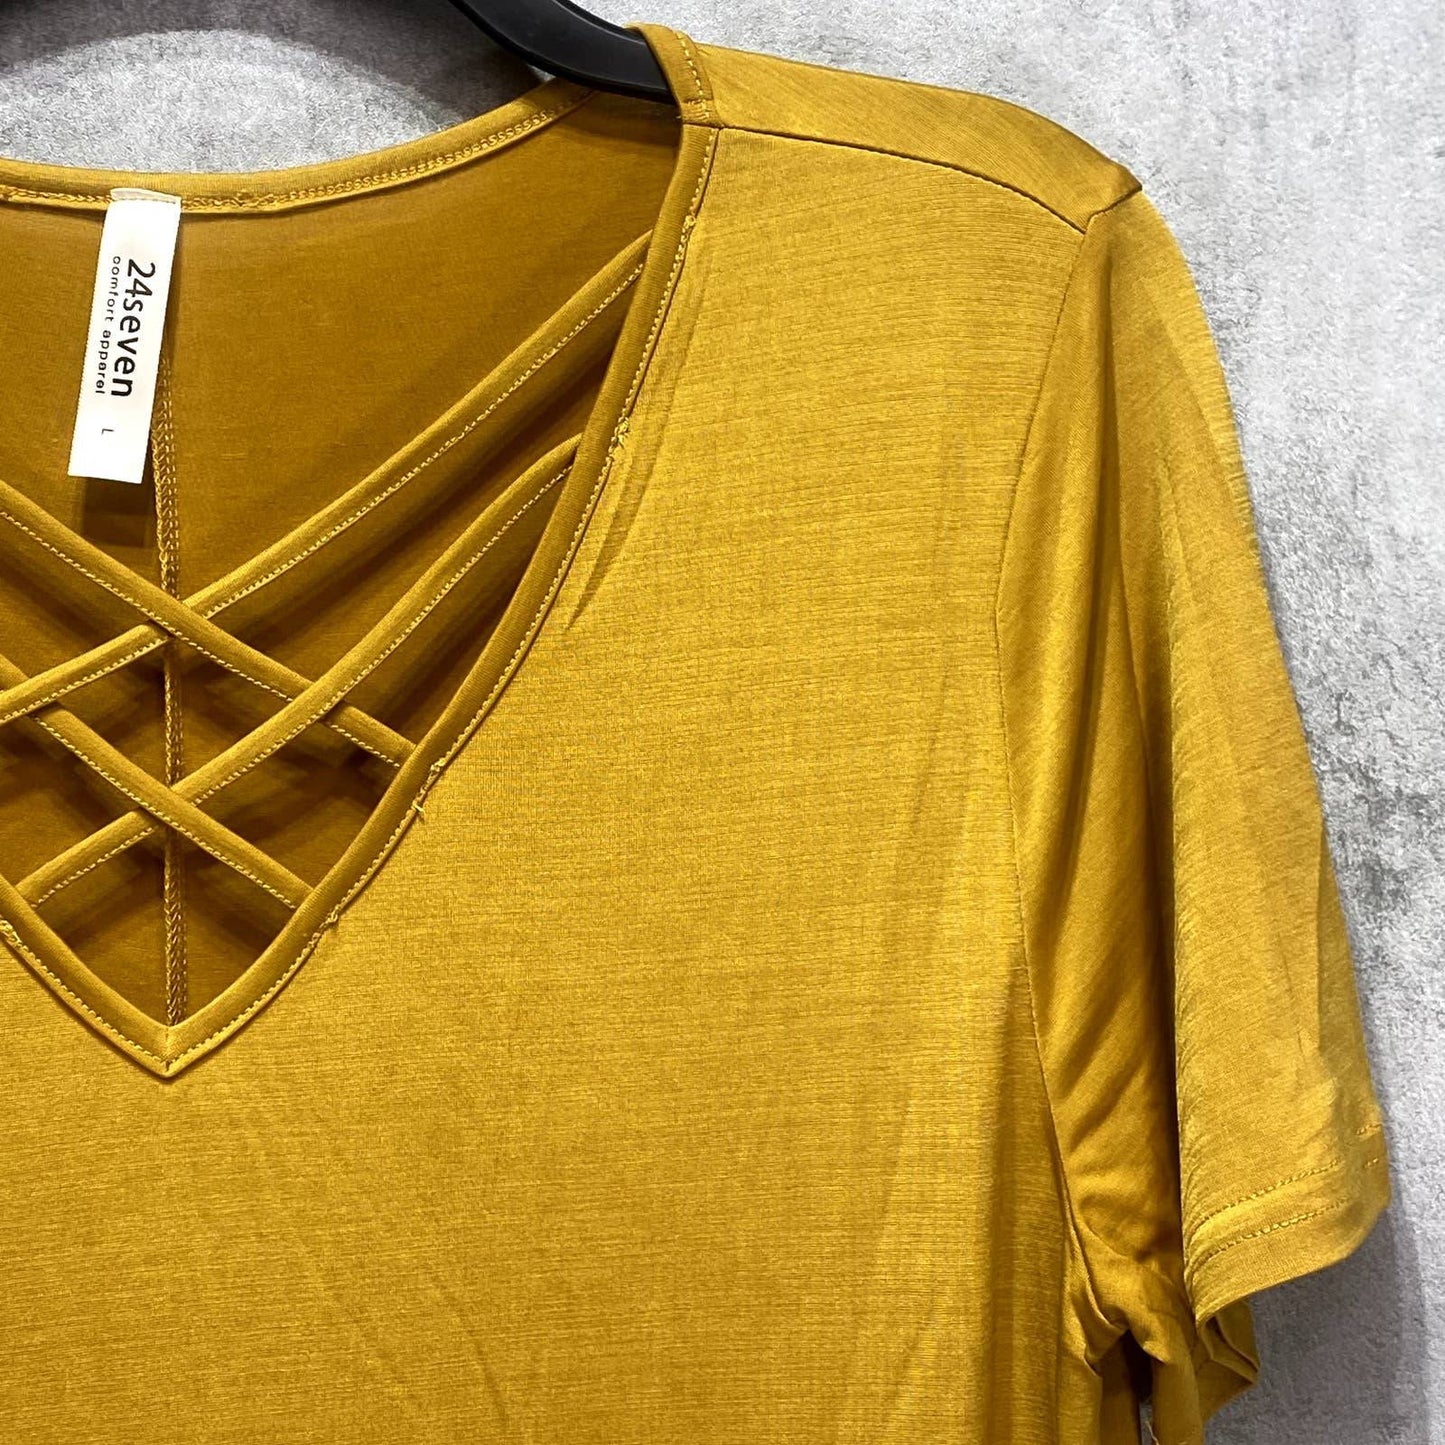 24SEVEN COMFORT APPAREL Mustard Criss Cross Neckline Short Sleeve T-Shirt Dress SZ L